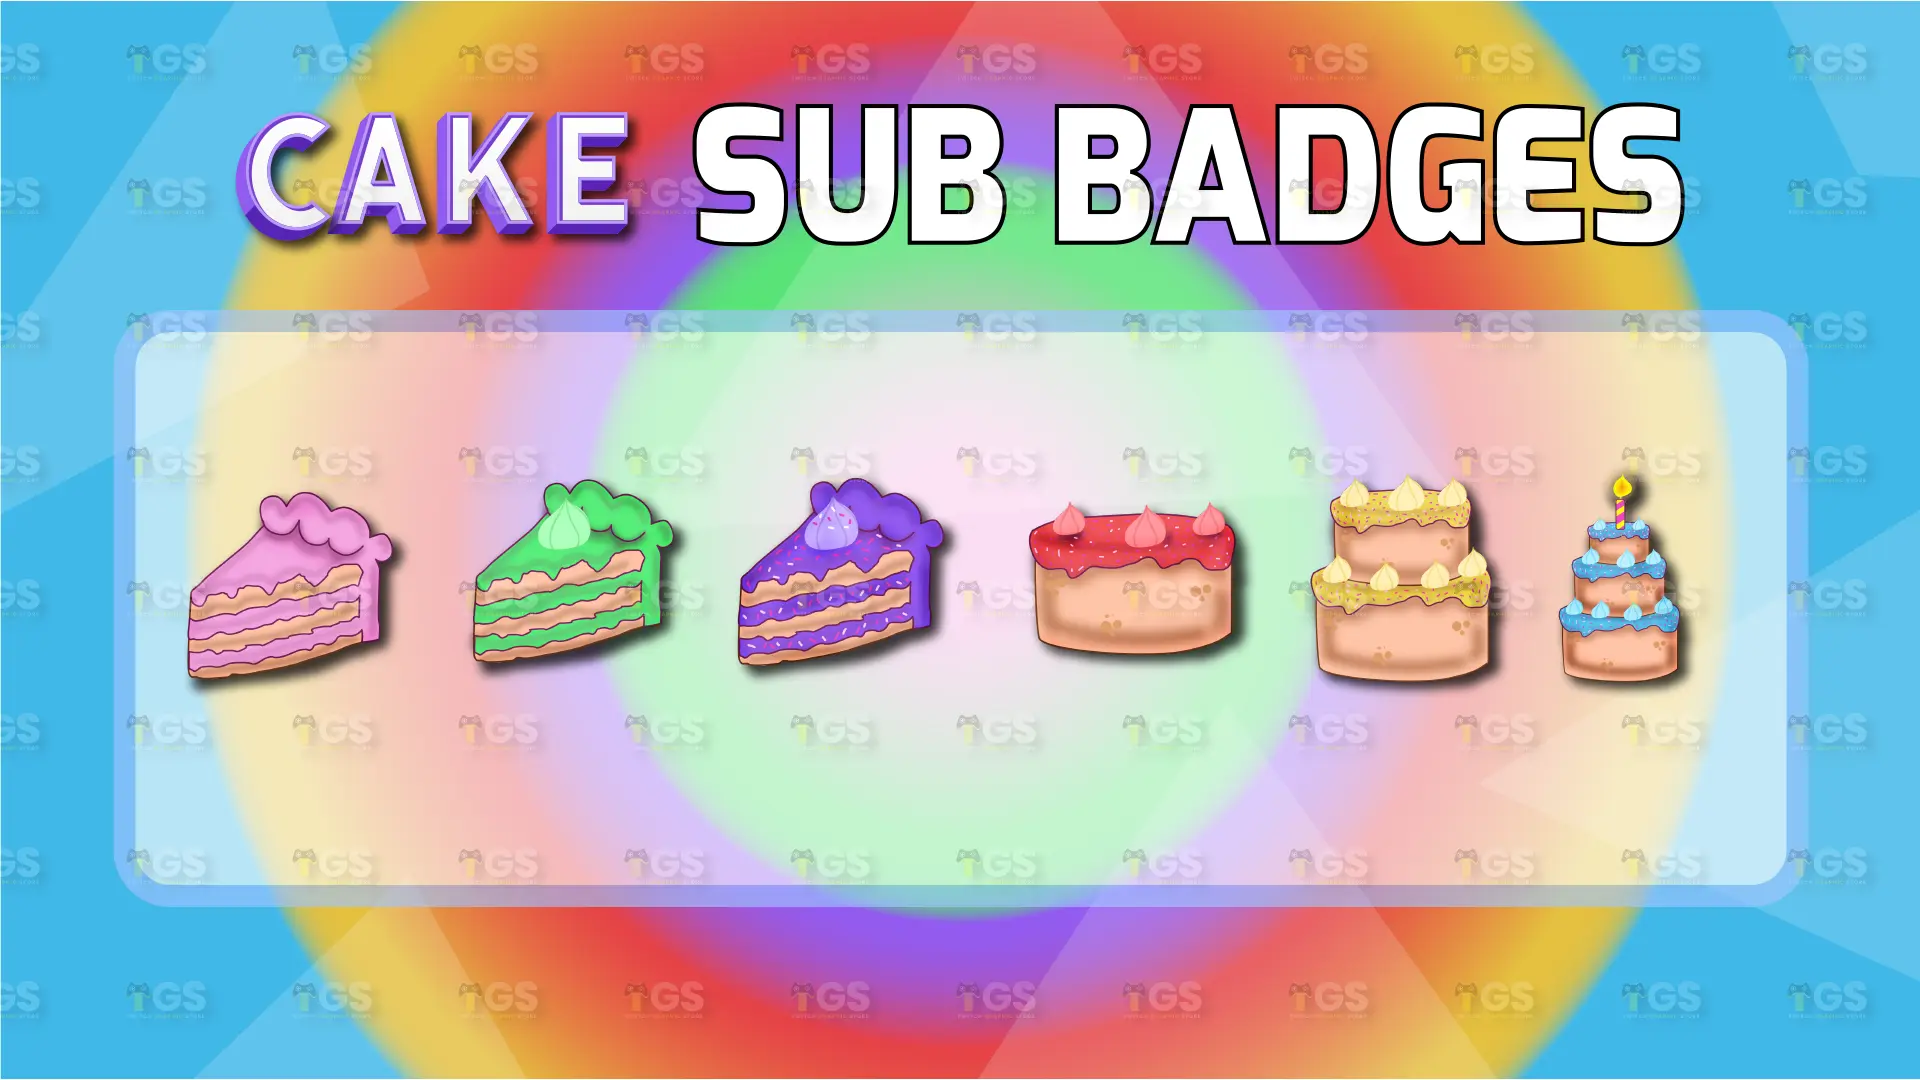 twitch sub badges cake